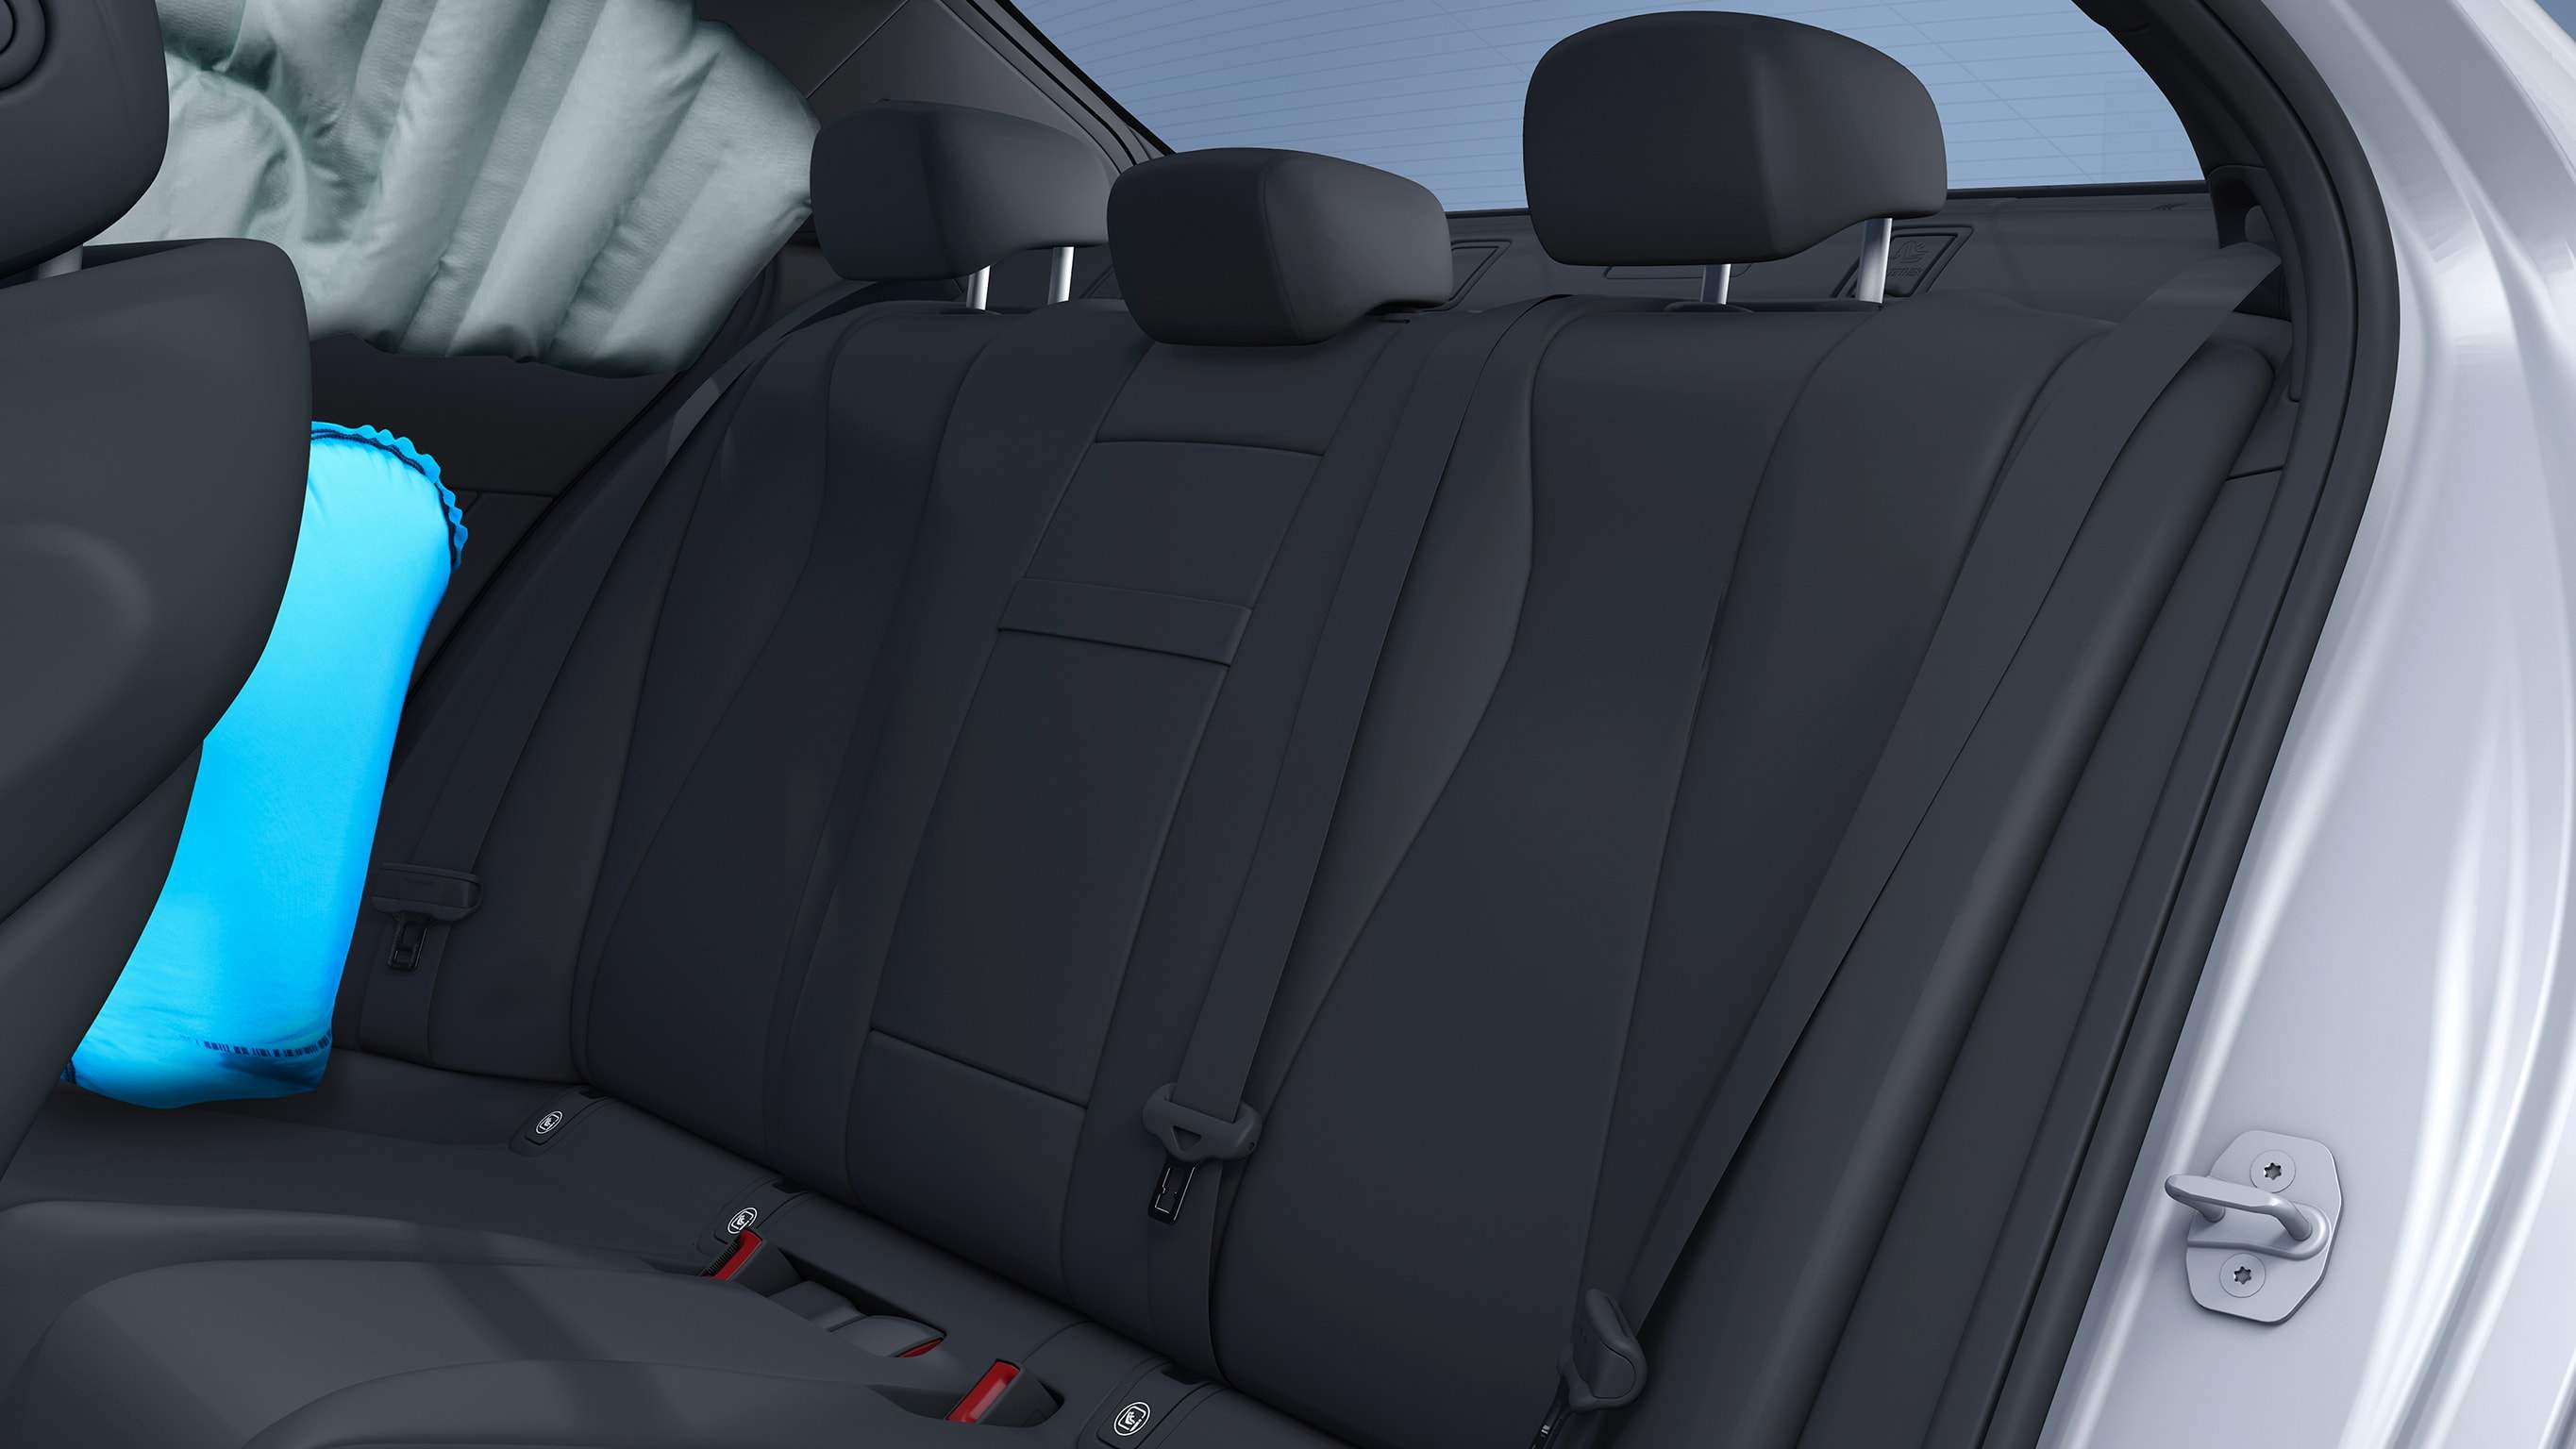 Na obrázku jsou boční airbagy v zadní části vozu EQA od Mercedes-EQ, které mohou ochránit hrudní oblast cestujících na vnějších zadních sedadlech při závažném bočním nárazu.